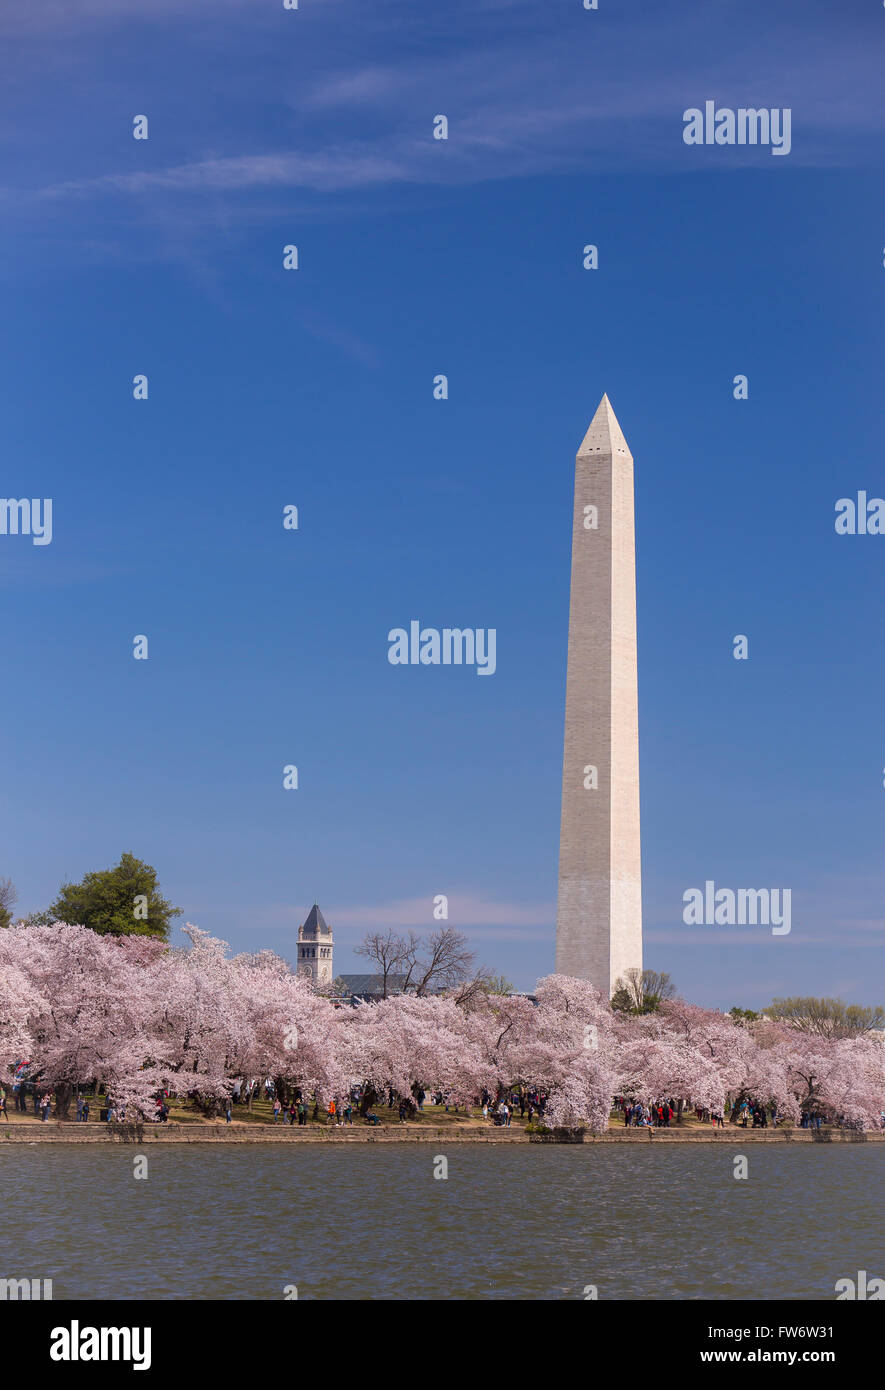 WASHINGTON, DC, USA - cerisiers en fleurs au bassin de marée et Washington Monument. Banque D'Images